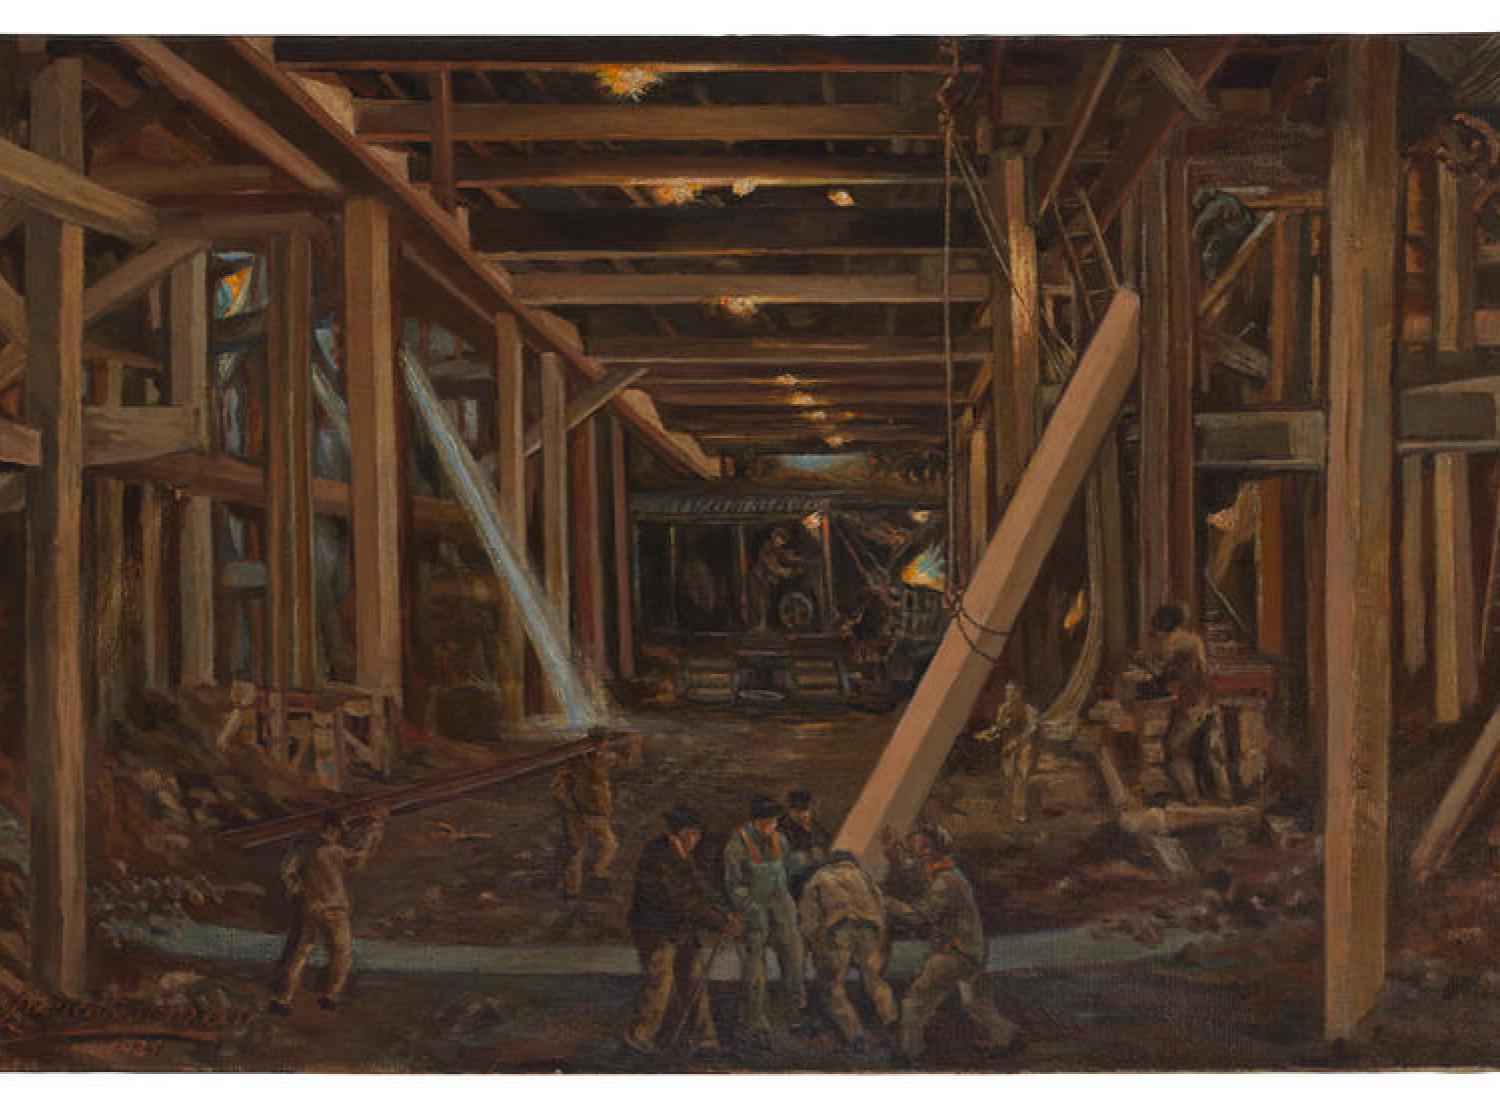 Una pintura en tonos marrones que muestra una escena de construcción subterránea. Varios hombres en primer plano levantan una gran viga suspendida por una cuerda y una polea mientras la luz se filtra desde la calle.